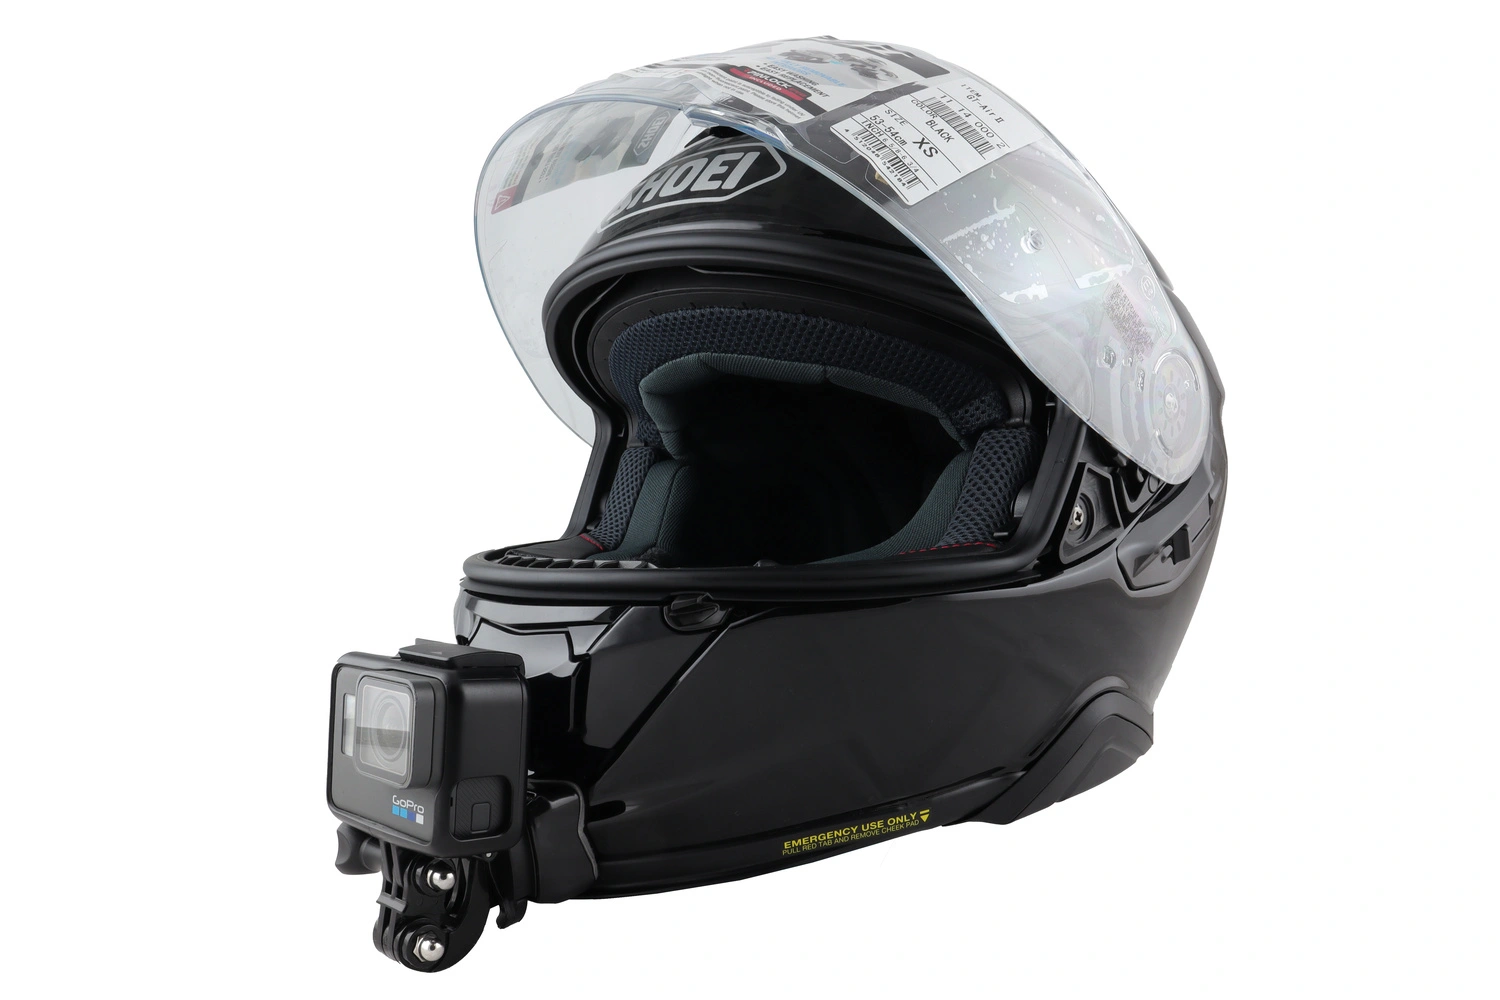 Fixation d'une GoPro pour un casque de moto : tout savoir !